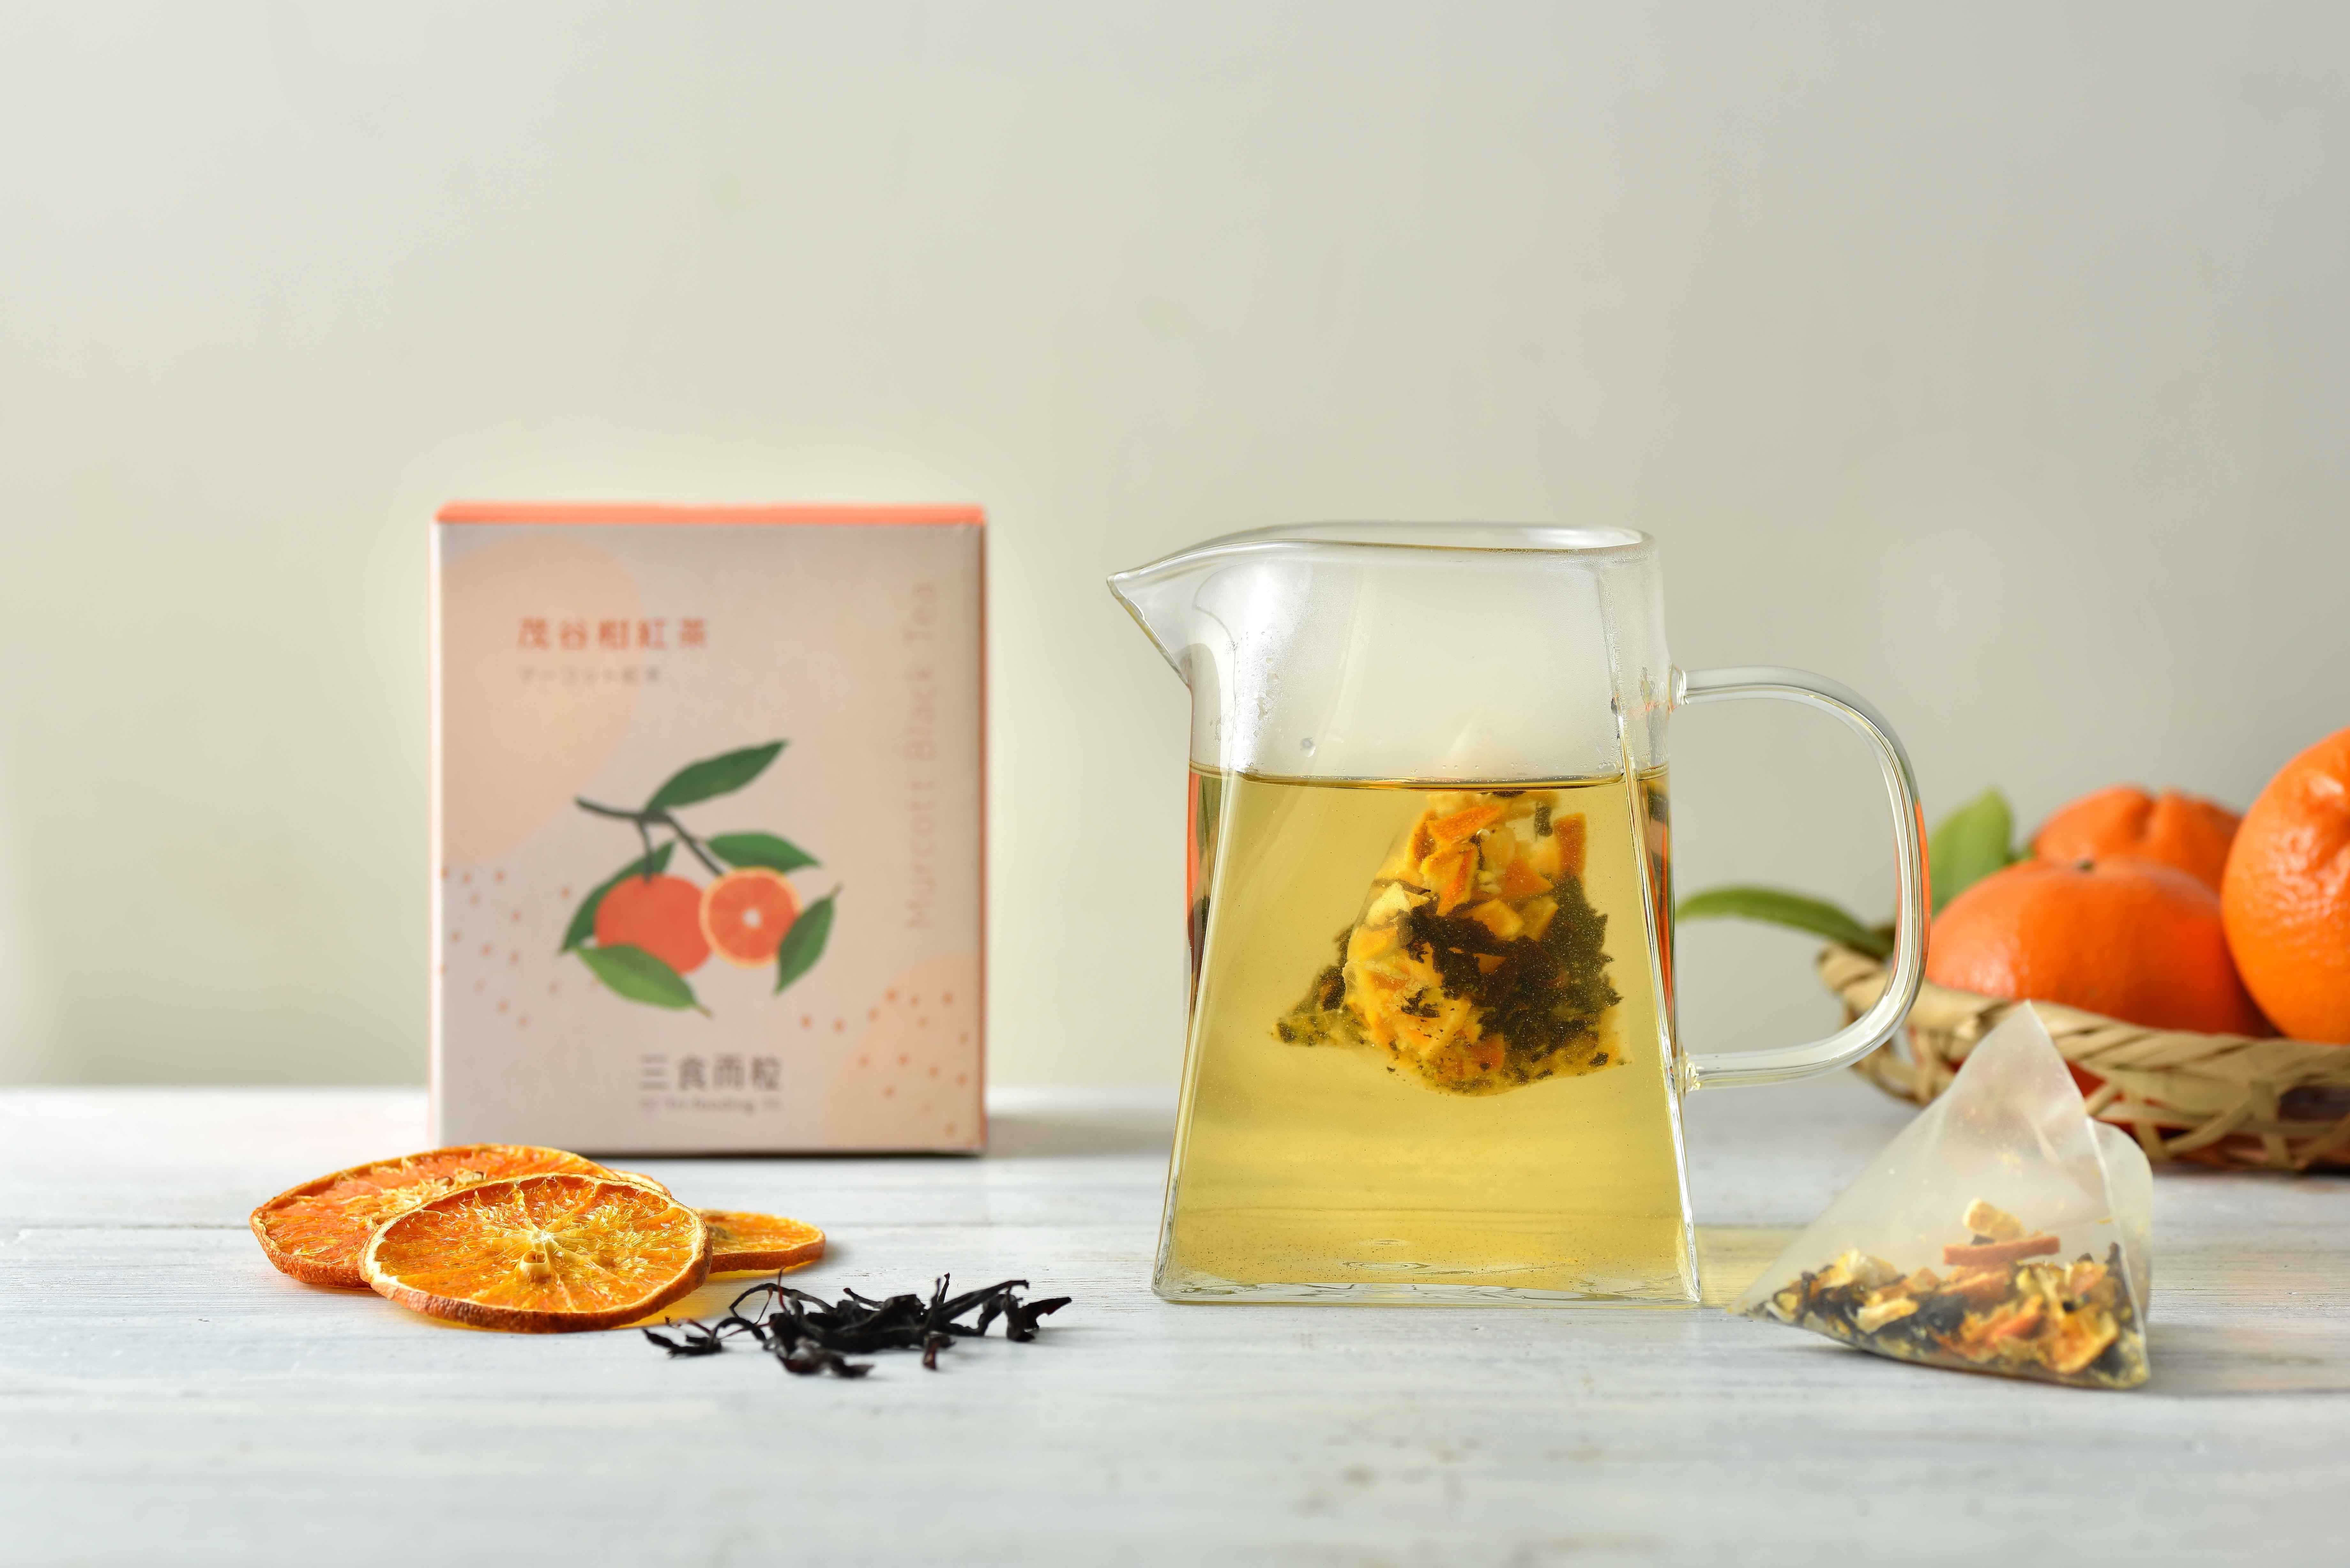 低溫烘焙乾燥的茂谷柑果乾，搭配享譽國際精選優質紅茶；
<br />柑橘香氣以及紅茶的甘甜柔潤，邀您一起品味在地果茶香。
<br />三角立體茶包，即沖即飲超方便。